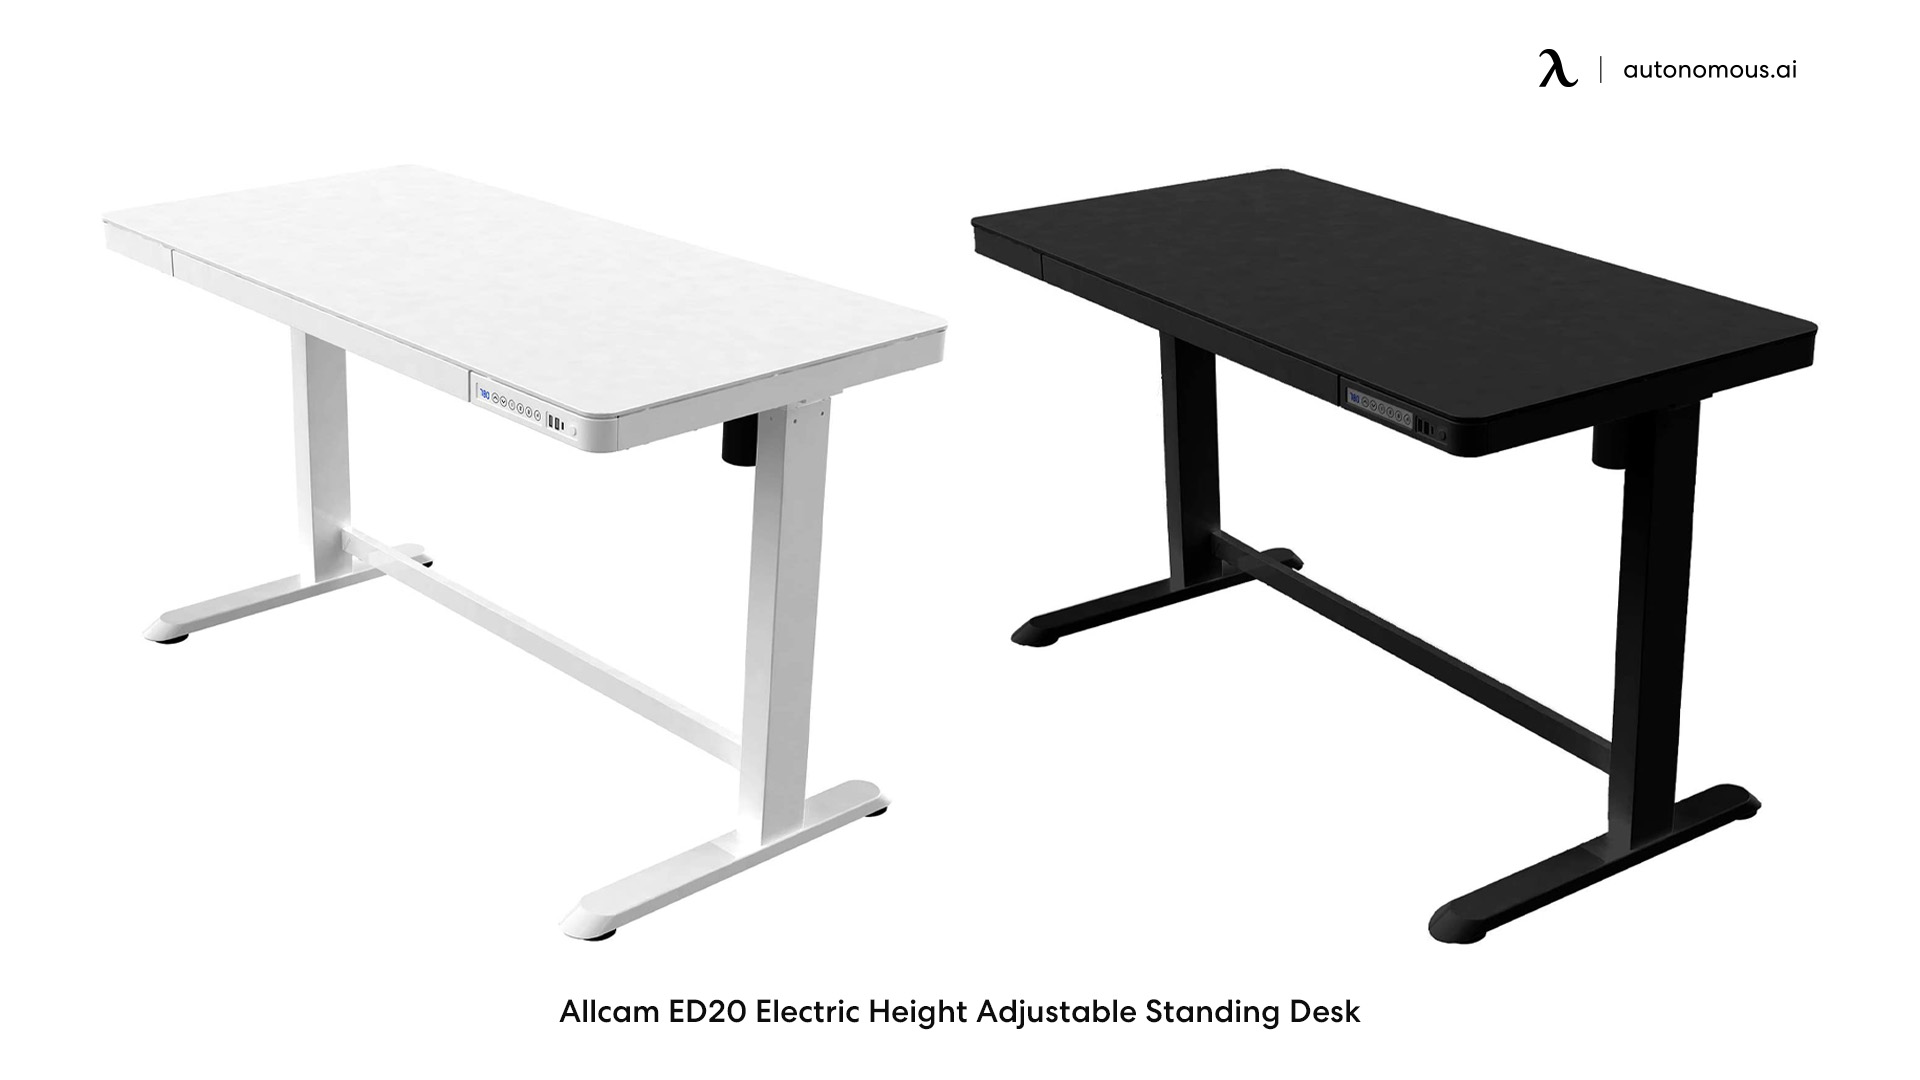 Allcam ED20 large adjustable desk